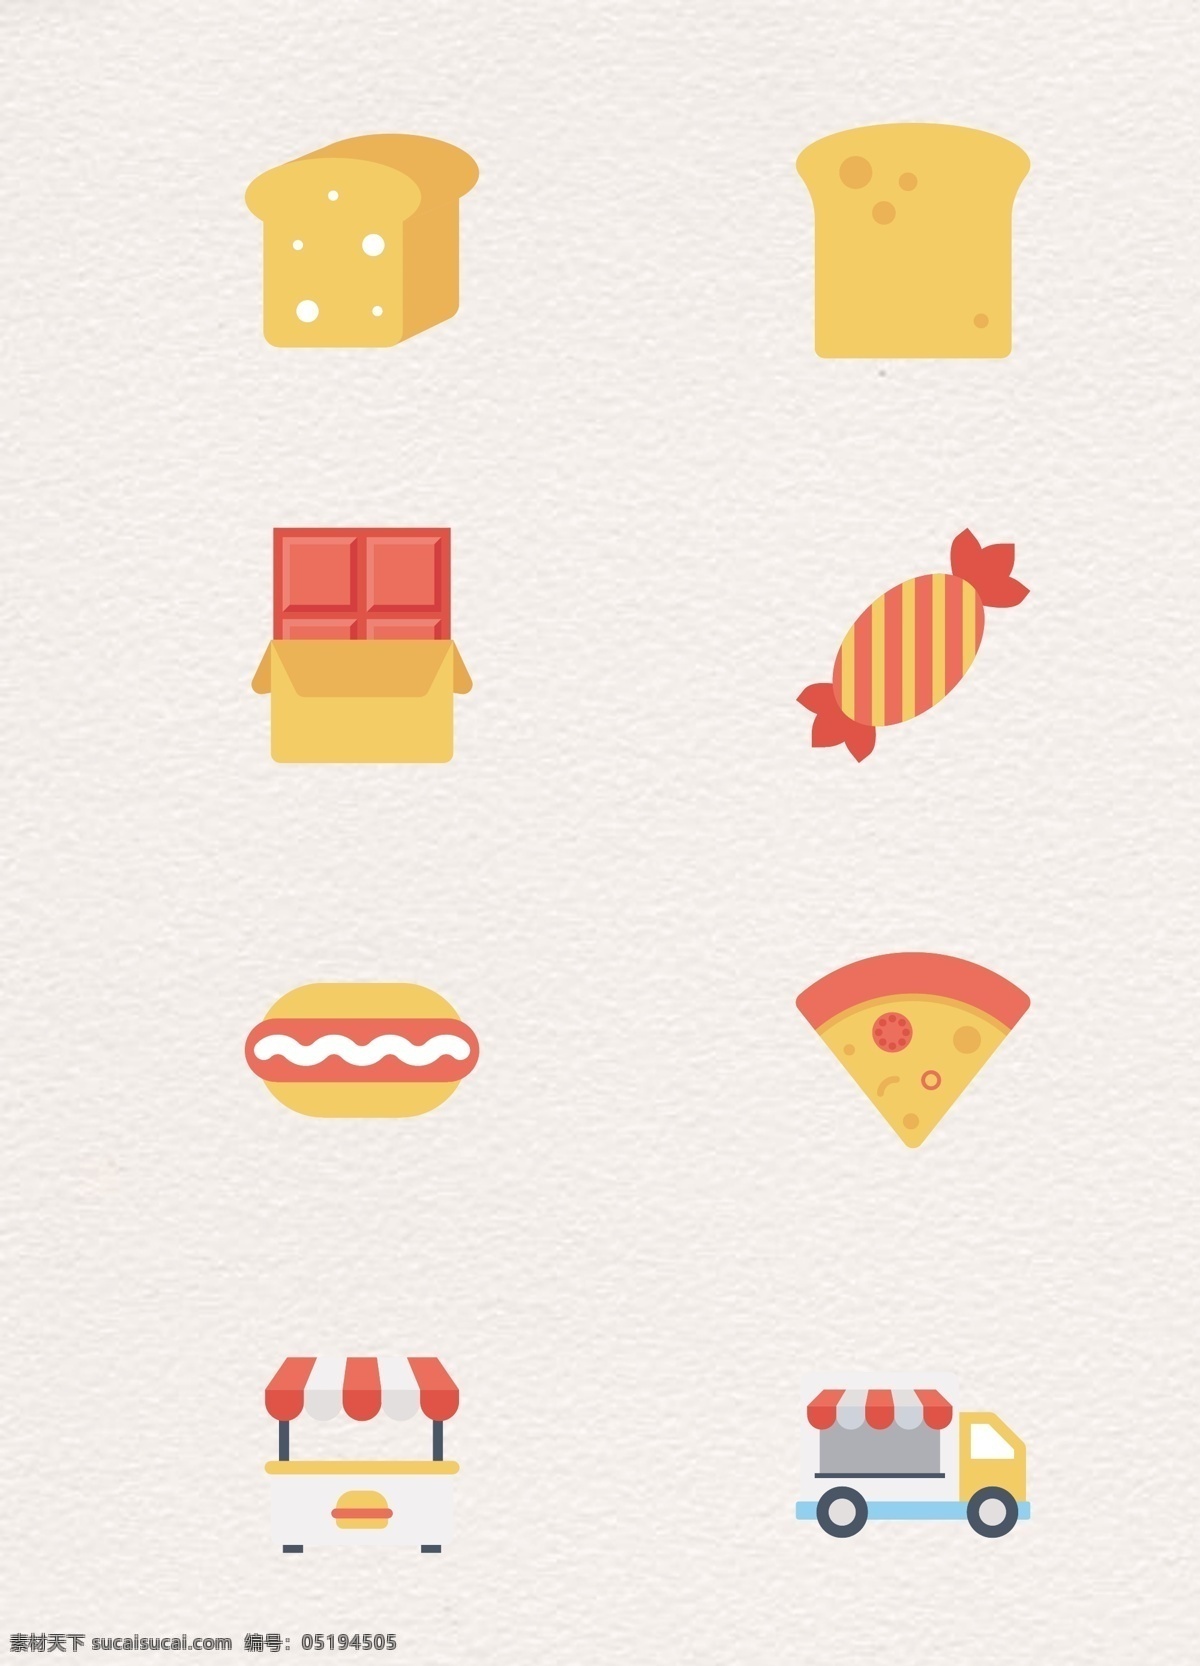 橙黄色 小 清新 食品 图标 矢量 合集 卡通 扁平化 图标设计 披萨 吐司面包 奶酪 巧克力 糖果 热狗 快餐车